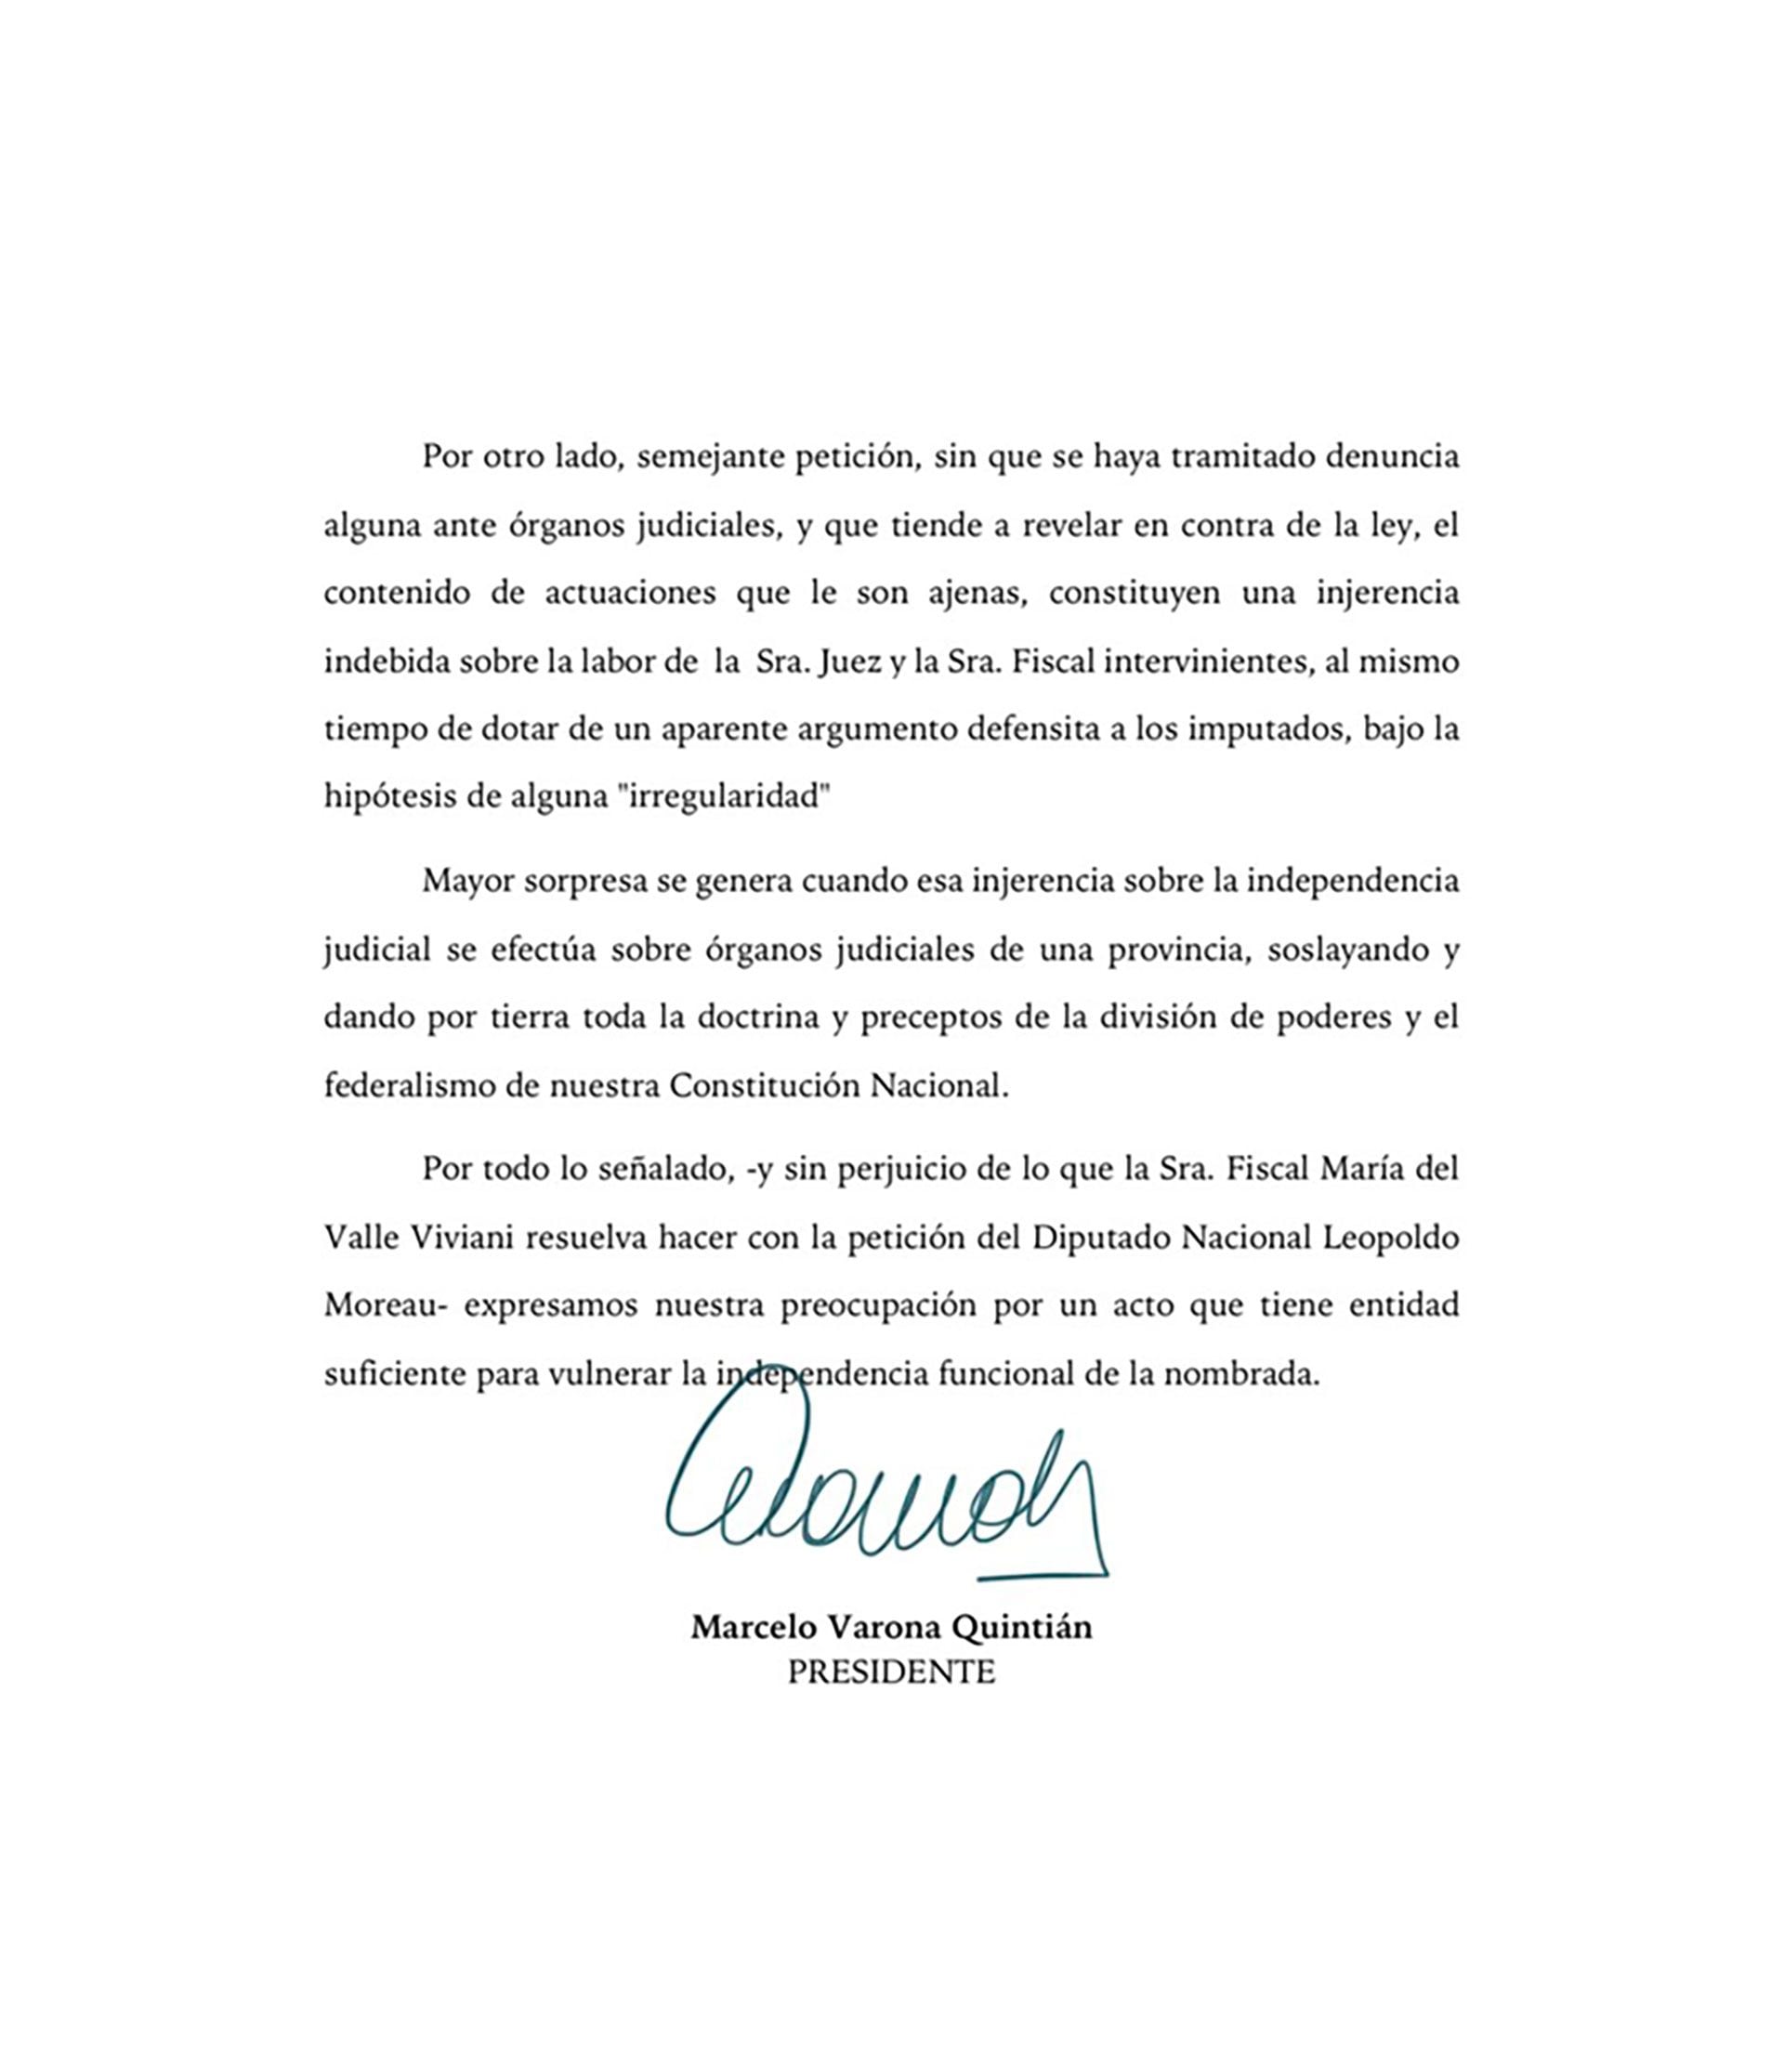 La-Asociación-Argentina-de-Fiscales-apoya-a-la-jueza-y-la-fiscal-presionadas-por-Hugo-Moyano